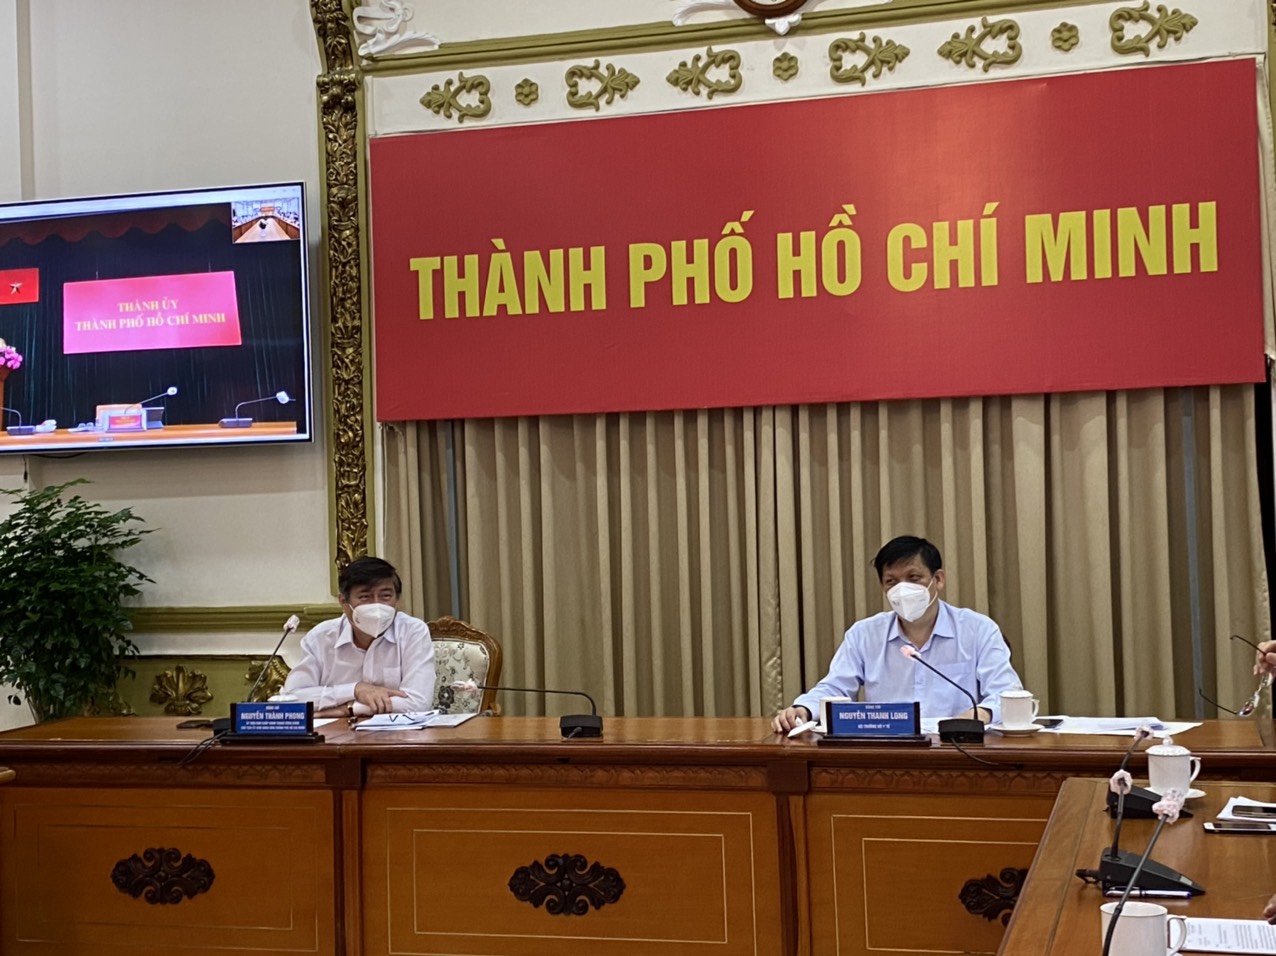 Bộ trưởng Bộ Y tế: Công thức 5 điểm chống dịch ở TP Hồ Chí Minh trong giai đoạn hiện nay - Ảnh 1.